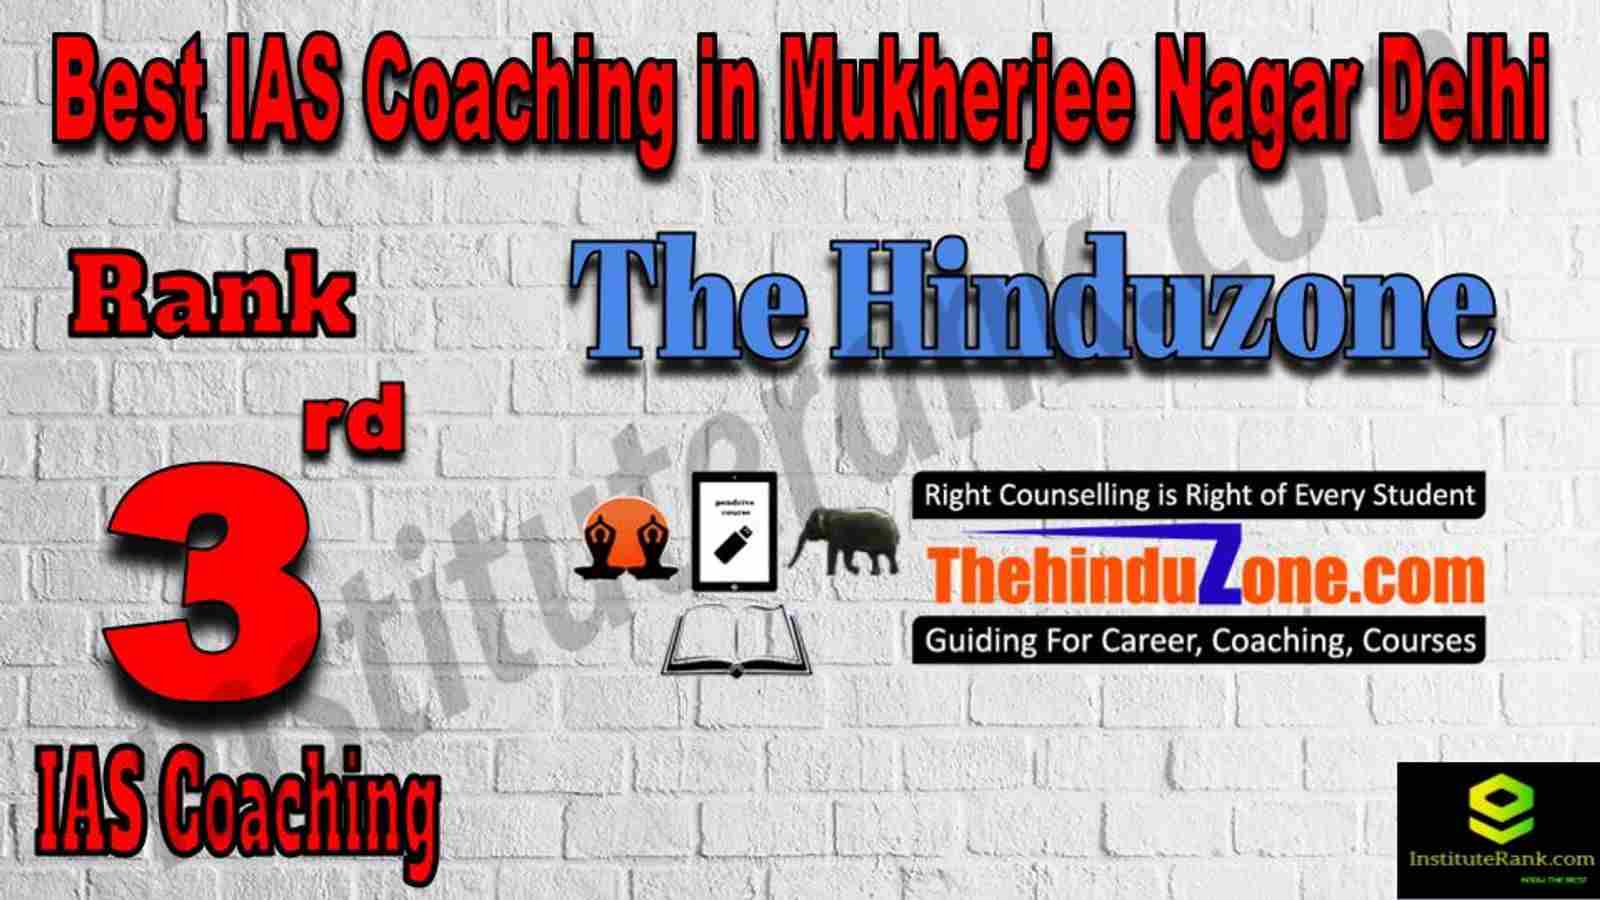 3rd Best IAS Coaching in Mukherjee Nagar 